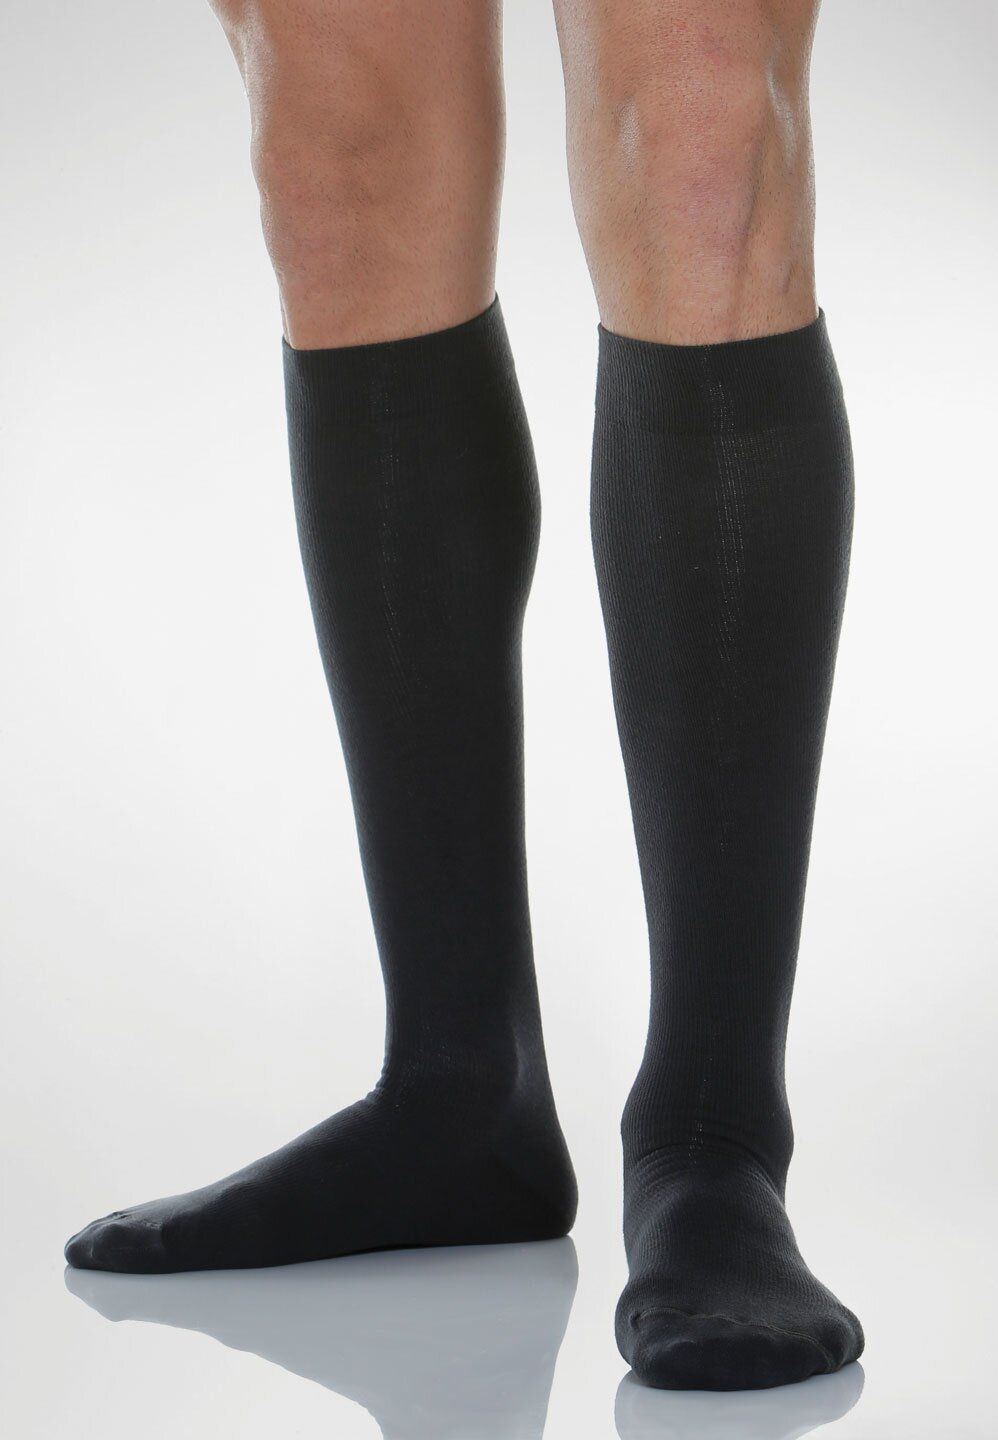 Relaxsan Cotton Socks Гольфы с хлопком 1 класс компрессии Унисекс, р. 3, арт. 820 (18-22 мм рт.ст.), 140 DEN (черного цвета. с хлопком), пара, 1 шт.